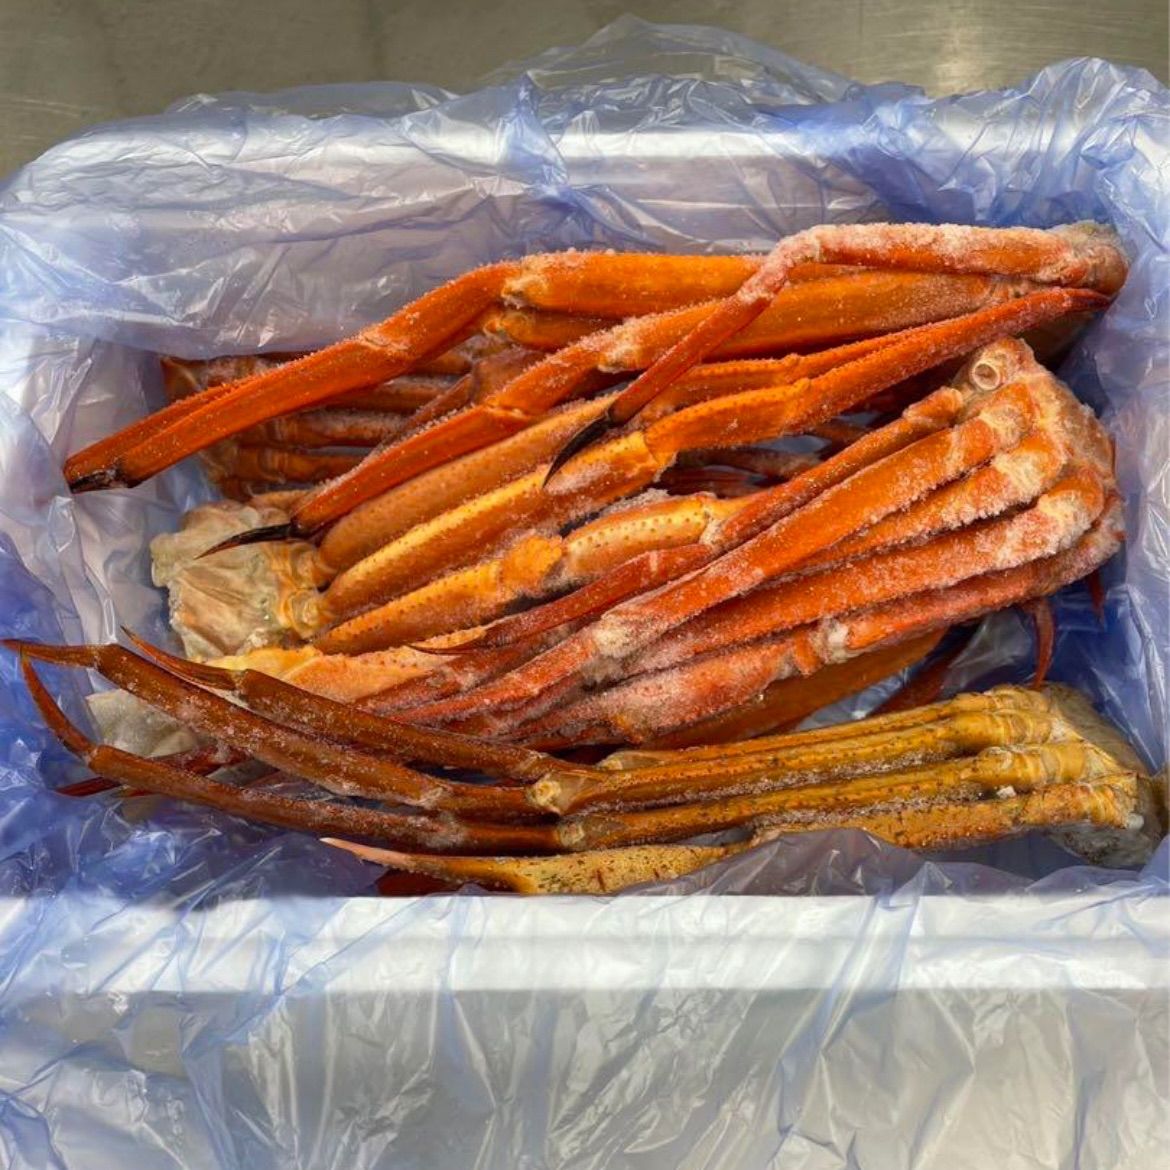 トゲズワイカニ 1.5kg - 魚介類(加工食品)